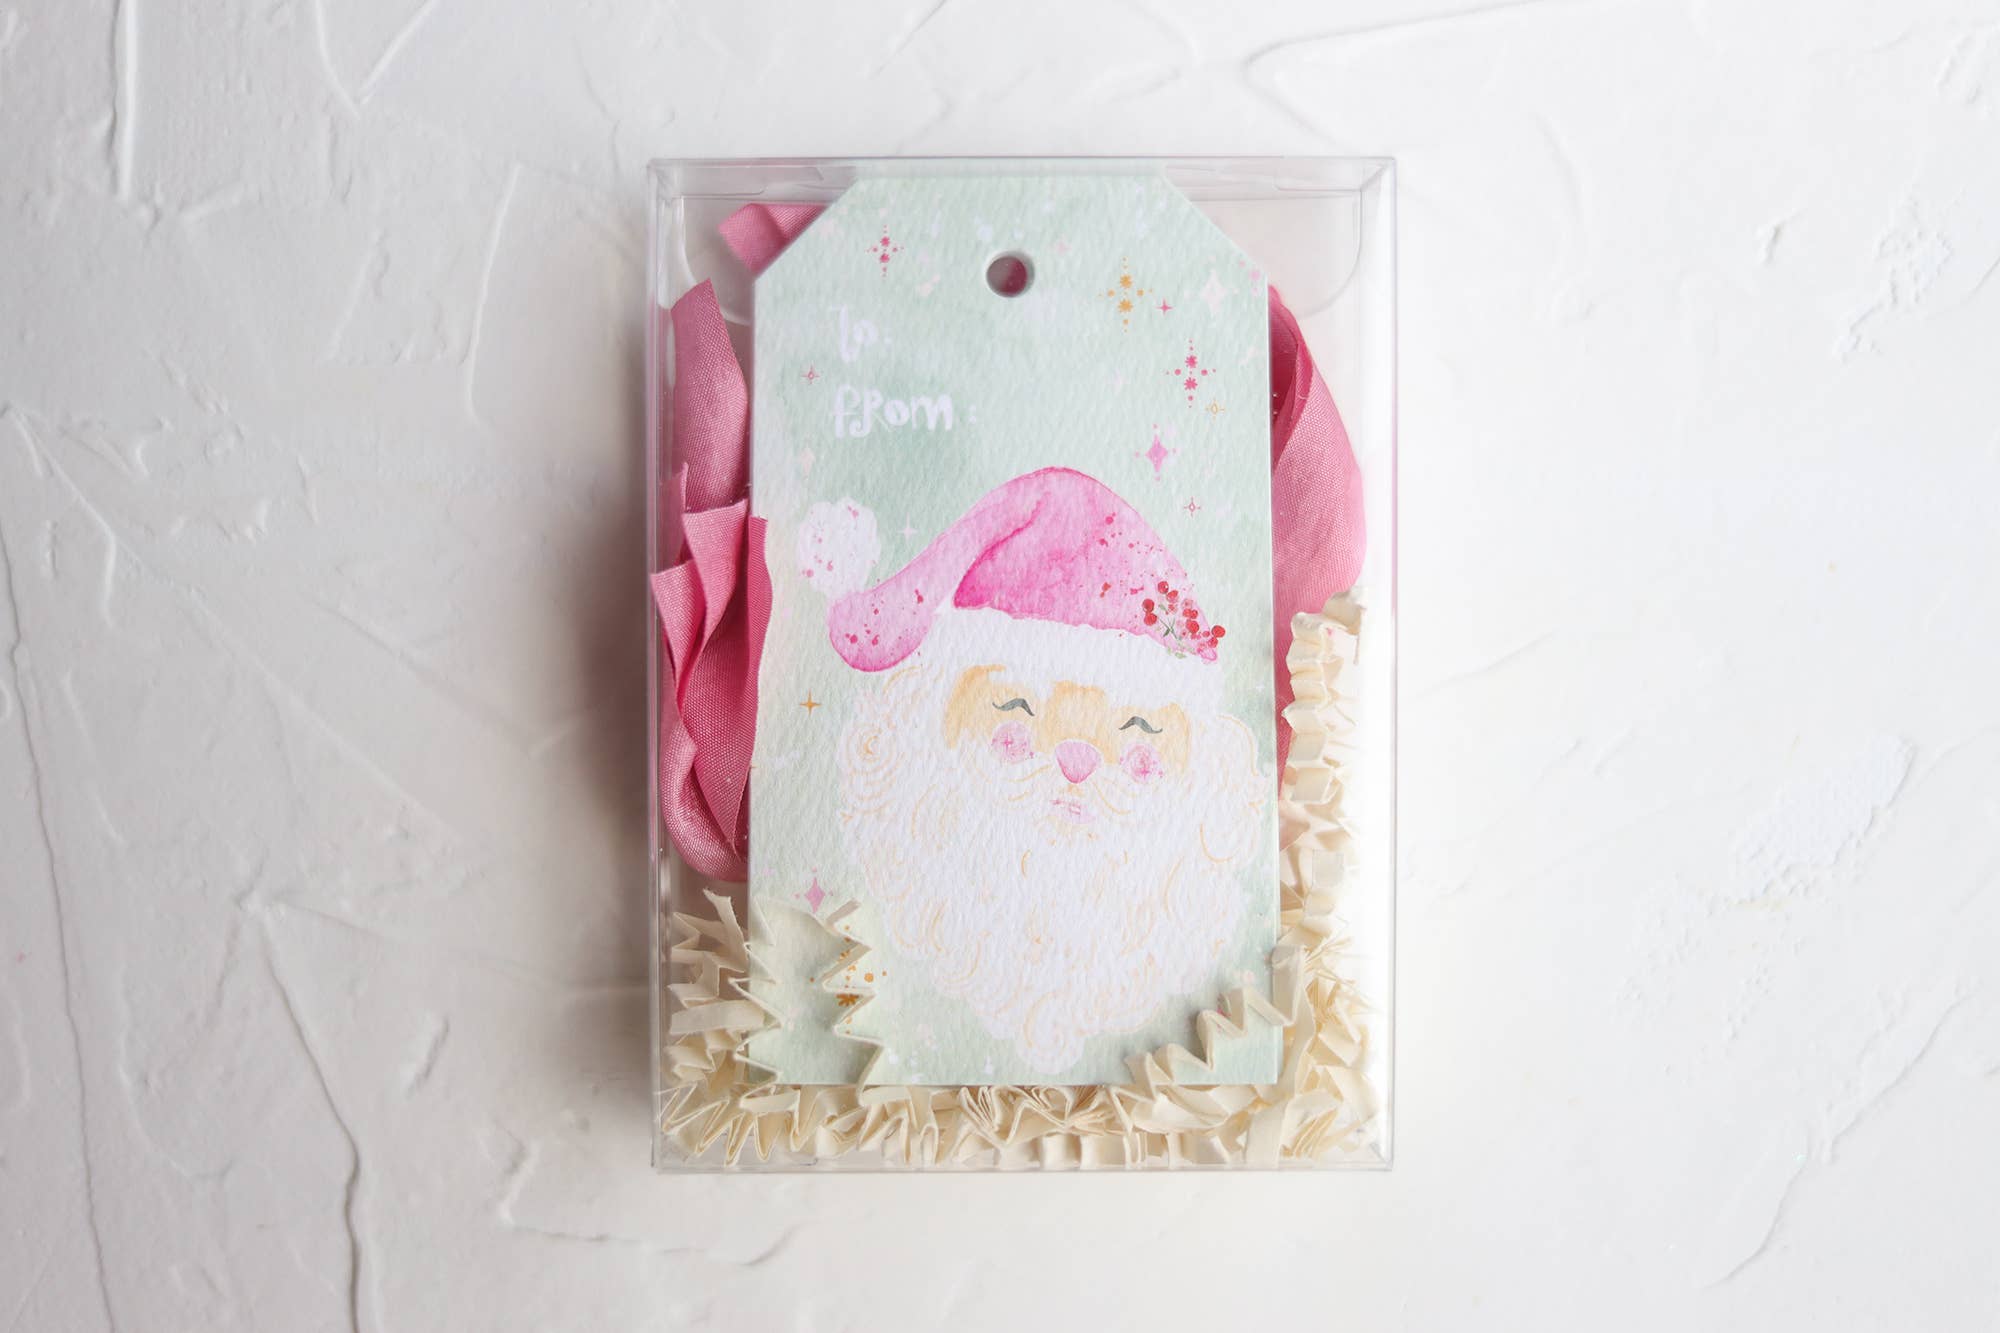 from Santa, cute Santa Claus holiday gift tag set